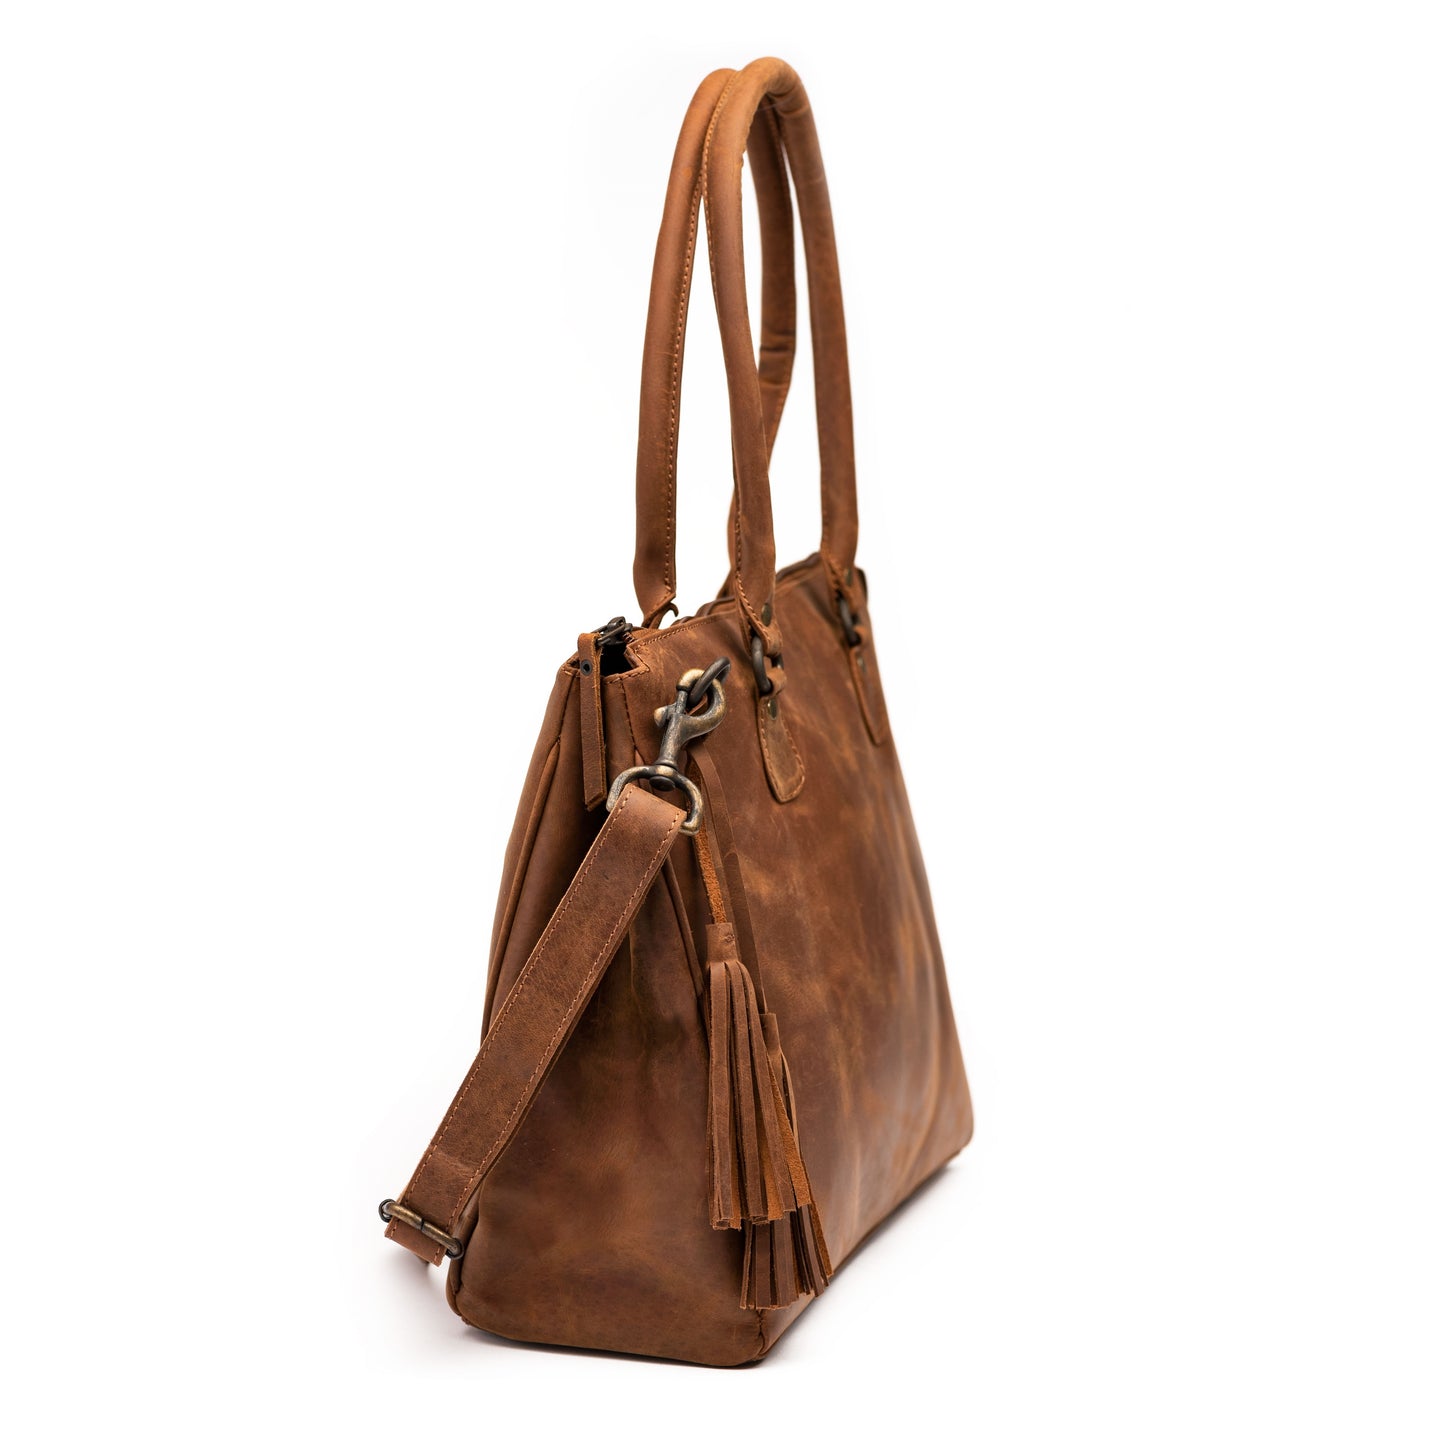 Leather Handbag - Saddle Brown